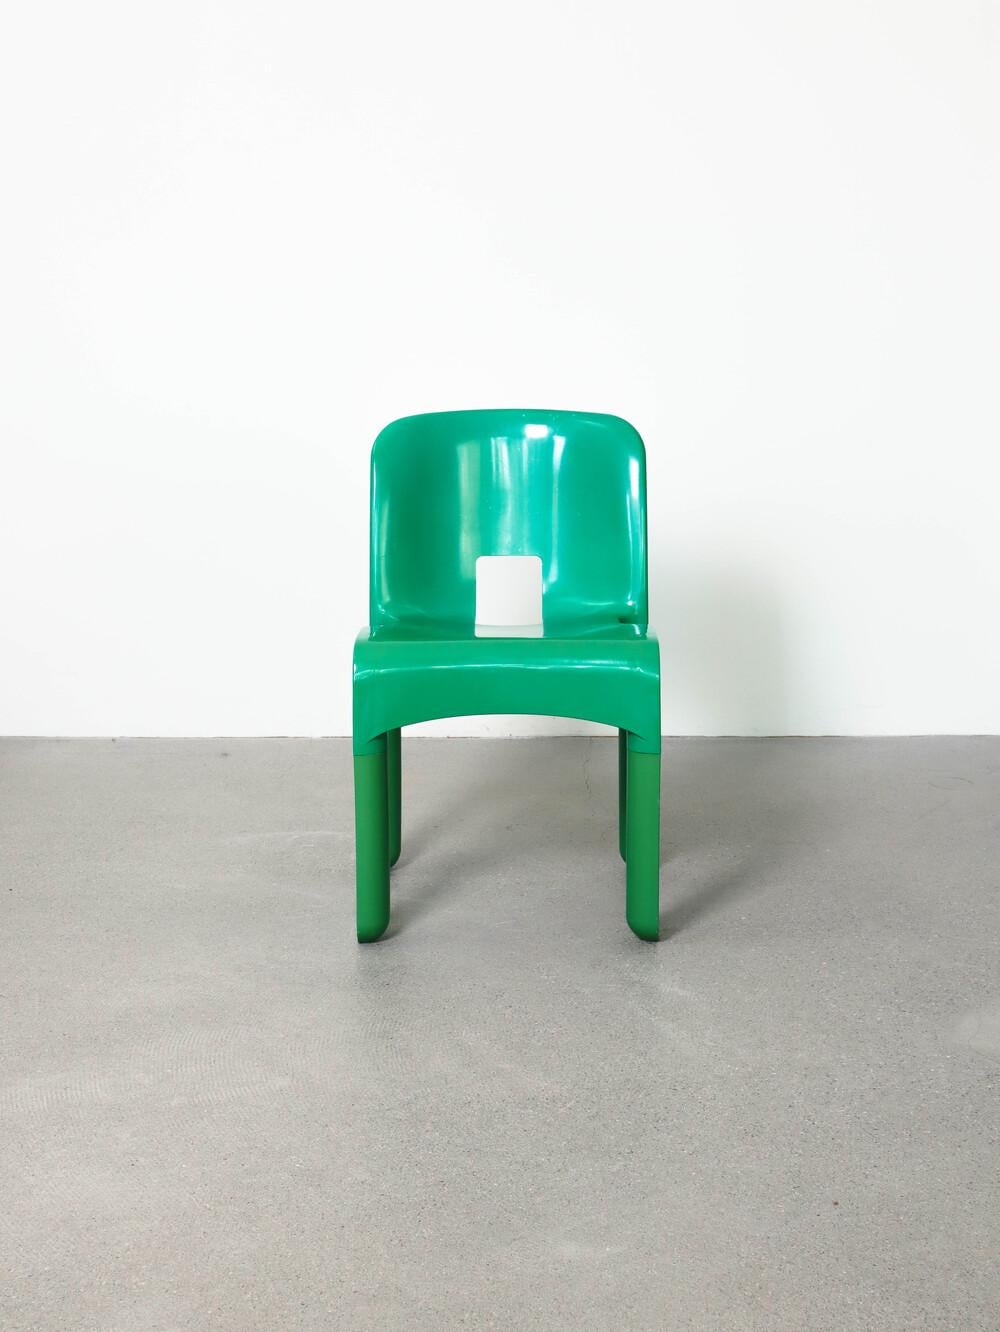 4867 Universale Stuhl von Joe Colombo für Kartell, 1970er Jahre
guter Zustand
Farbe: grün